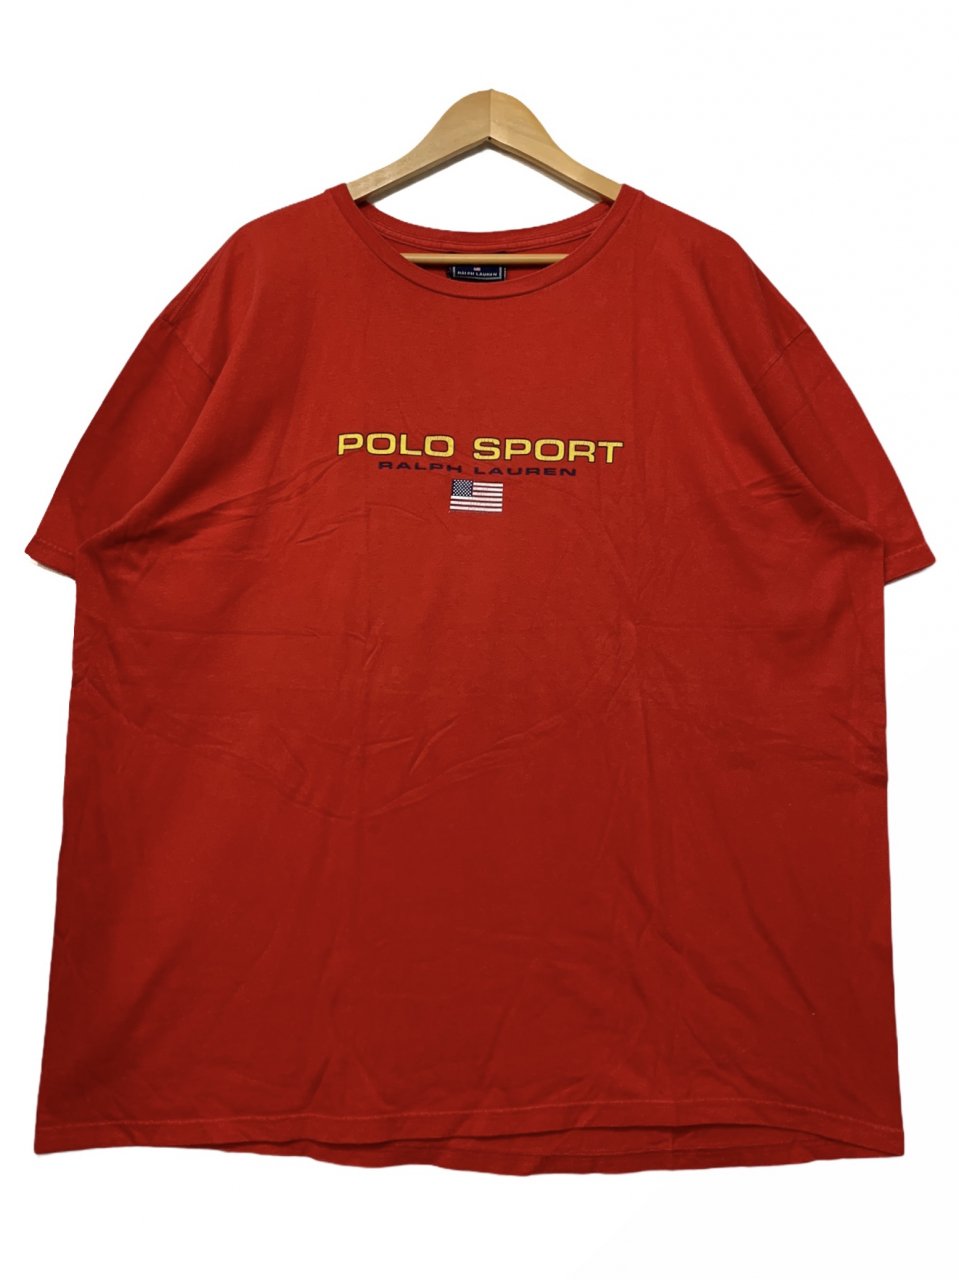 90s〜00s POLO SPORT Logo S/S Tee 赤 XL ポロスポーツ 半袖 Tシャツ